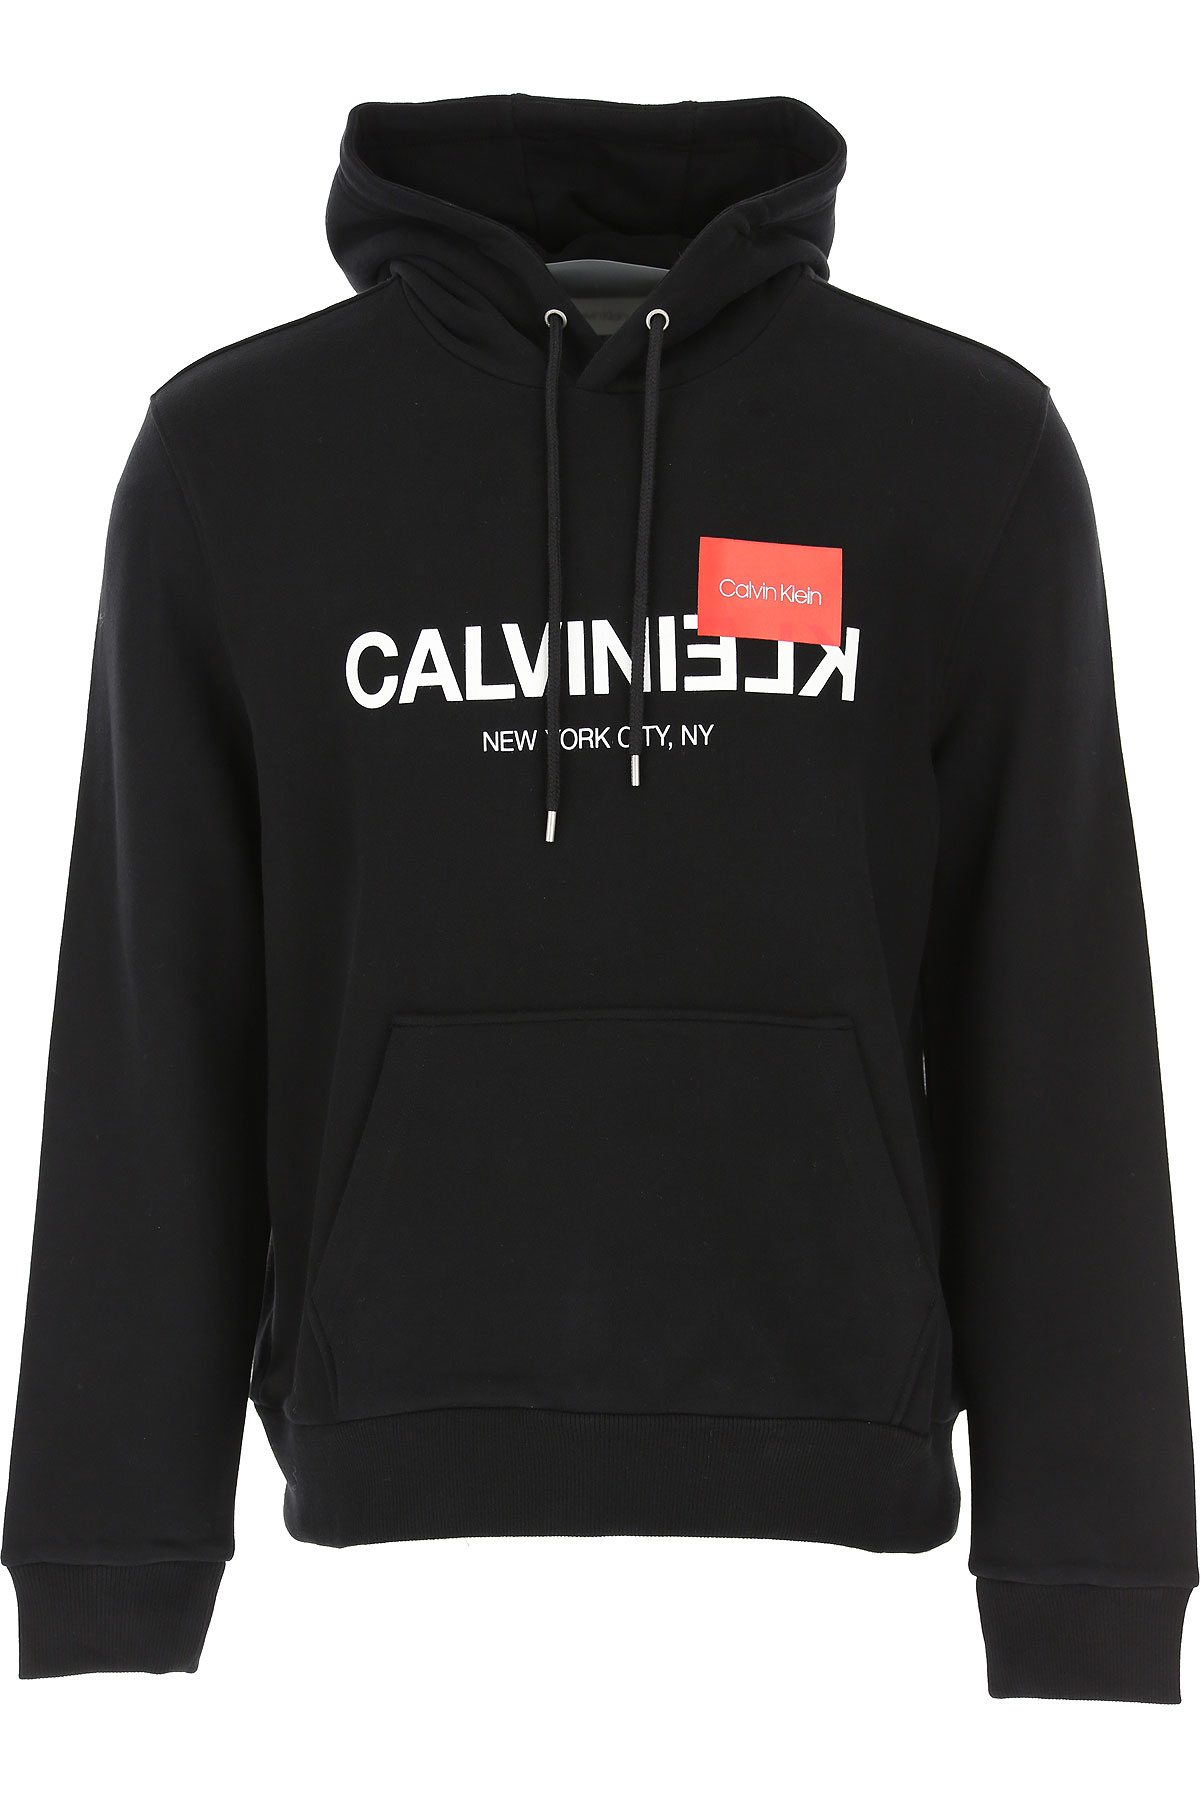 Calvin Klein Sweatshirt für Herren, Kapuzenpulli, Hoodie, Sweats Günstig im Sale, Schwarz, Baumwolle, 2017, L M S XL XS